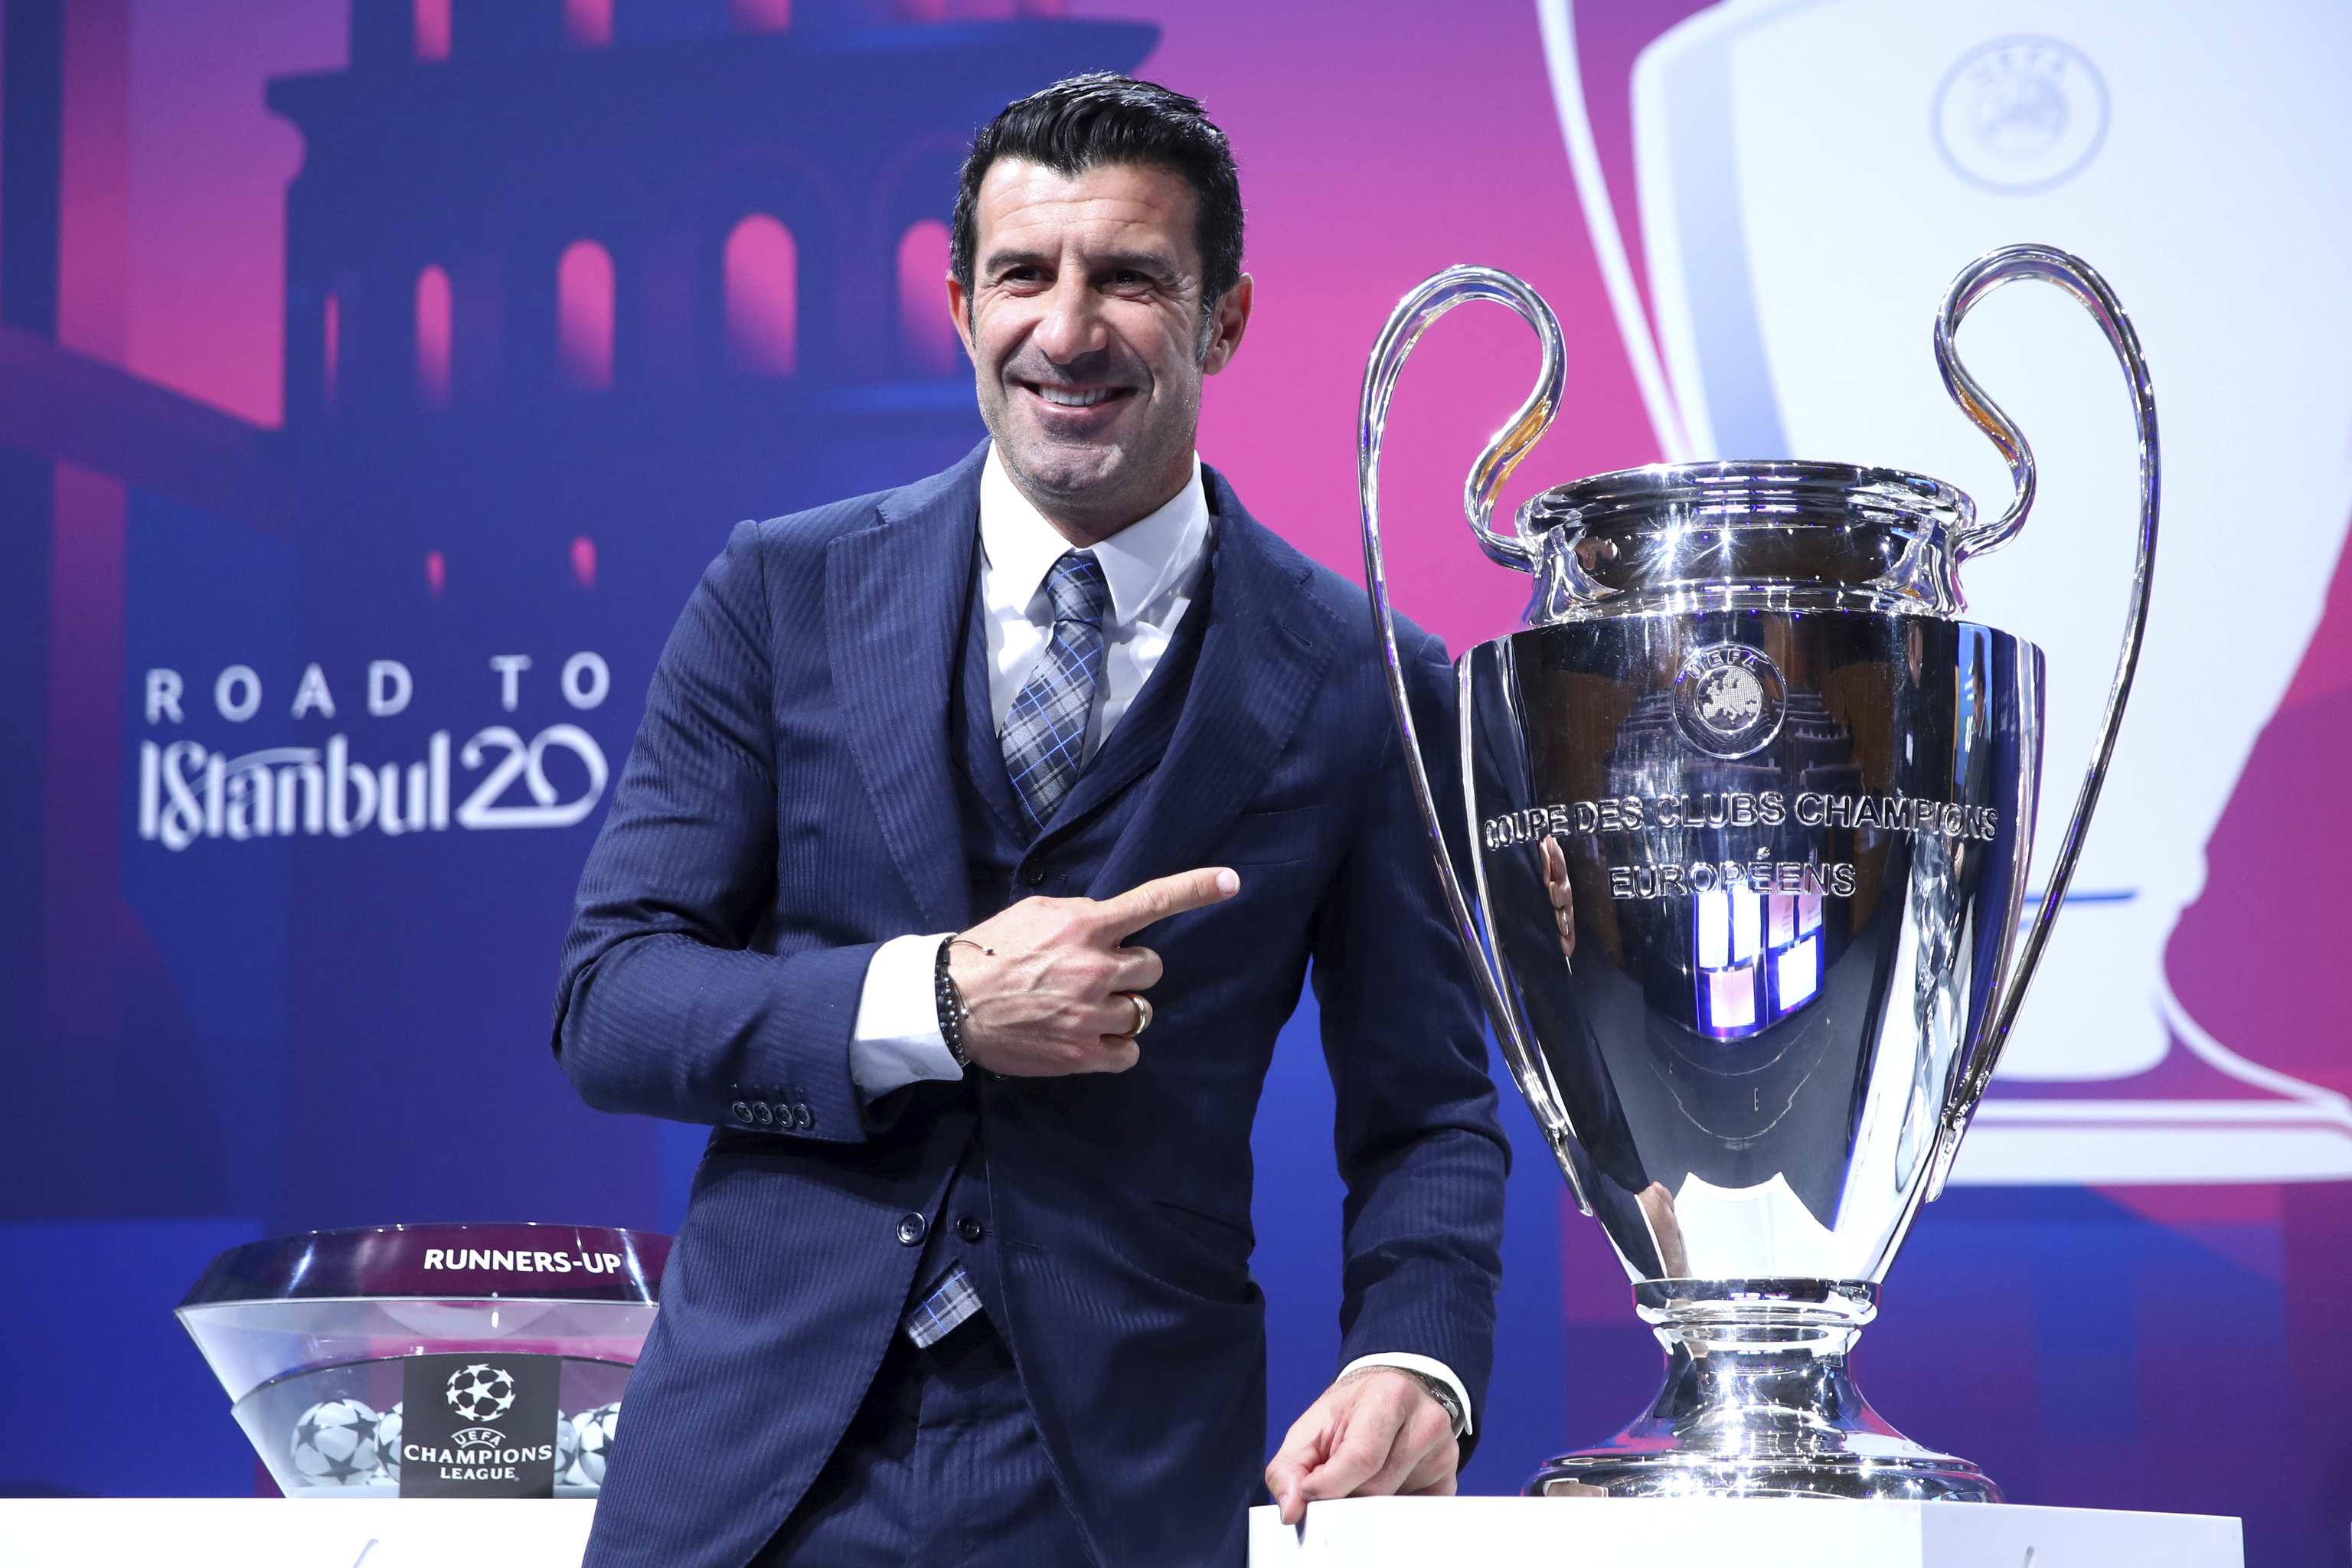 Champions: Horario y dónde en directo la repetición del sorteo de la Champions League | Champions League 2021 - 2022